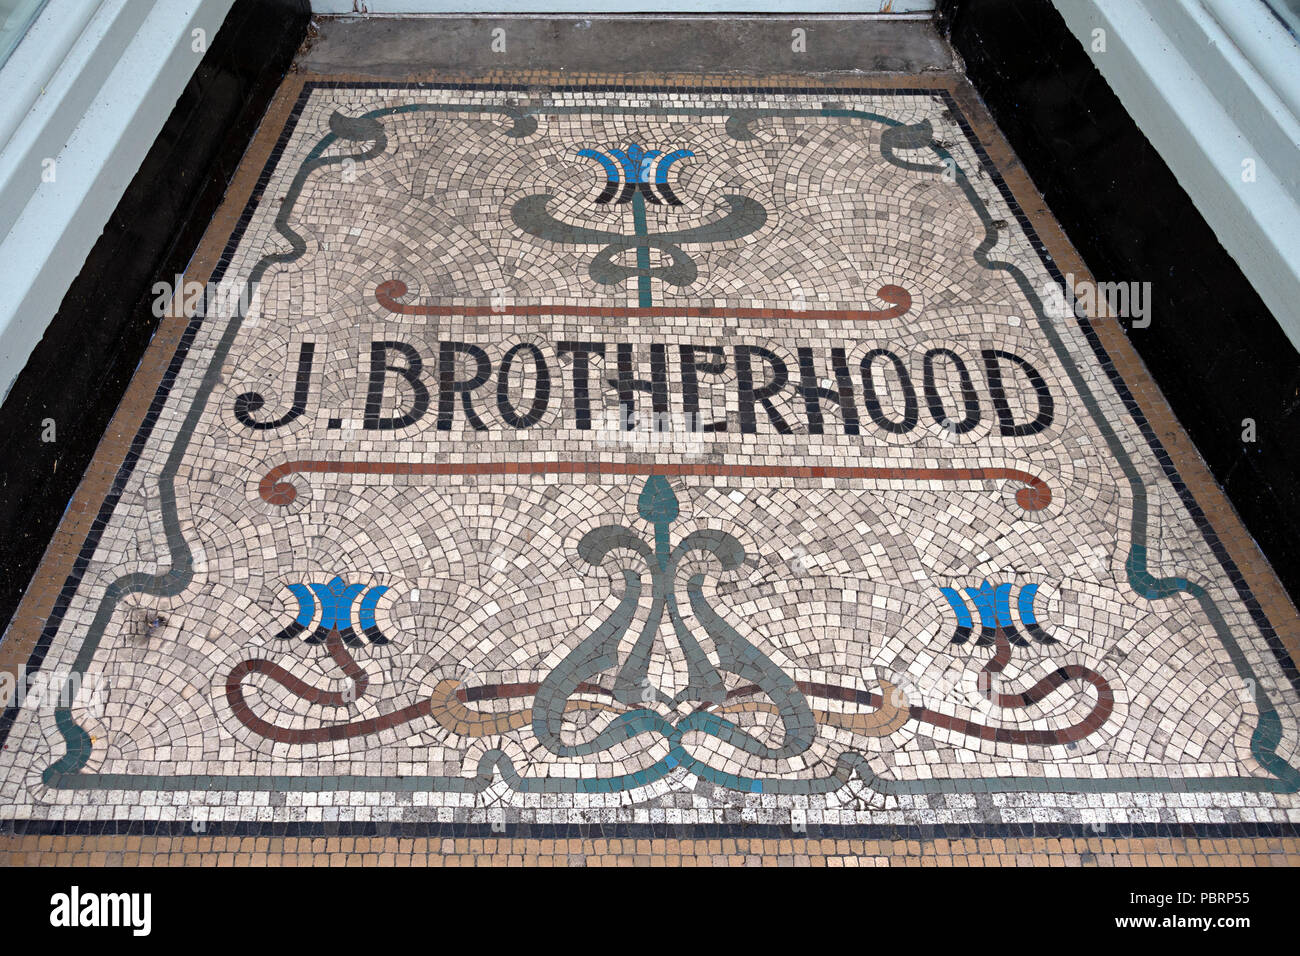 Pisos de mosaico cerámico puerta de entrada a la antigua tienda de ropa J. Hermandad, Melton Mowbray, Leicestershire Foto de stock